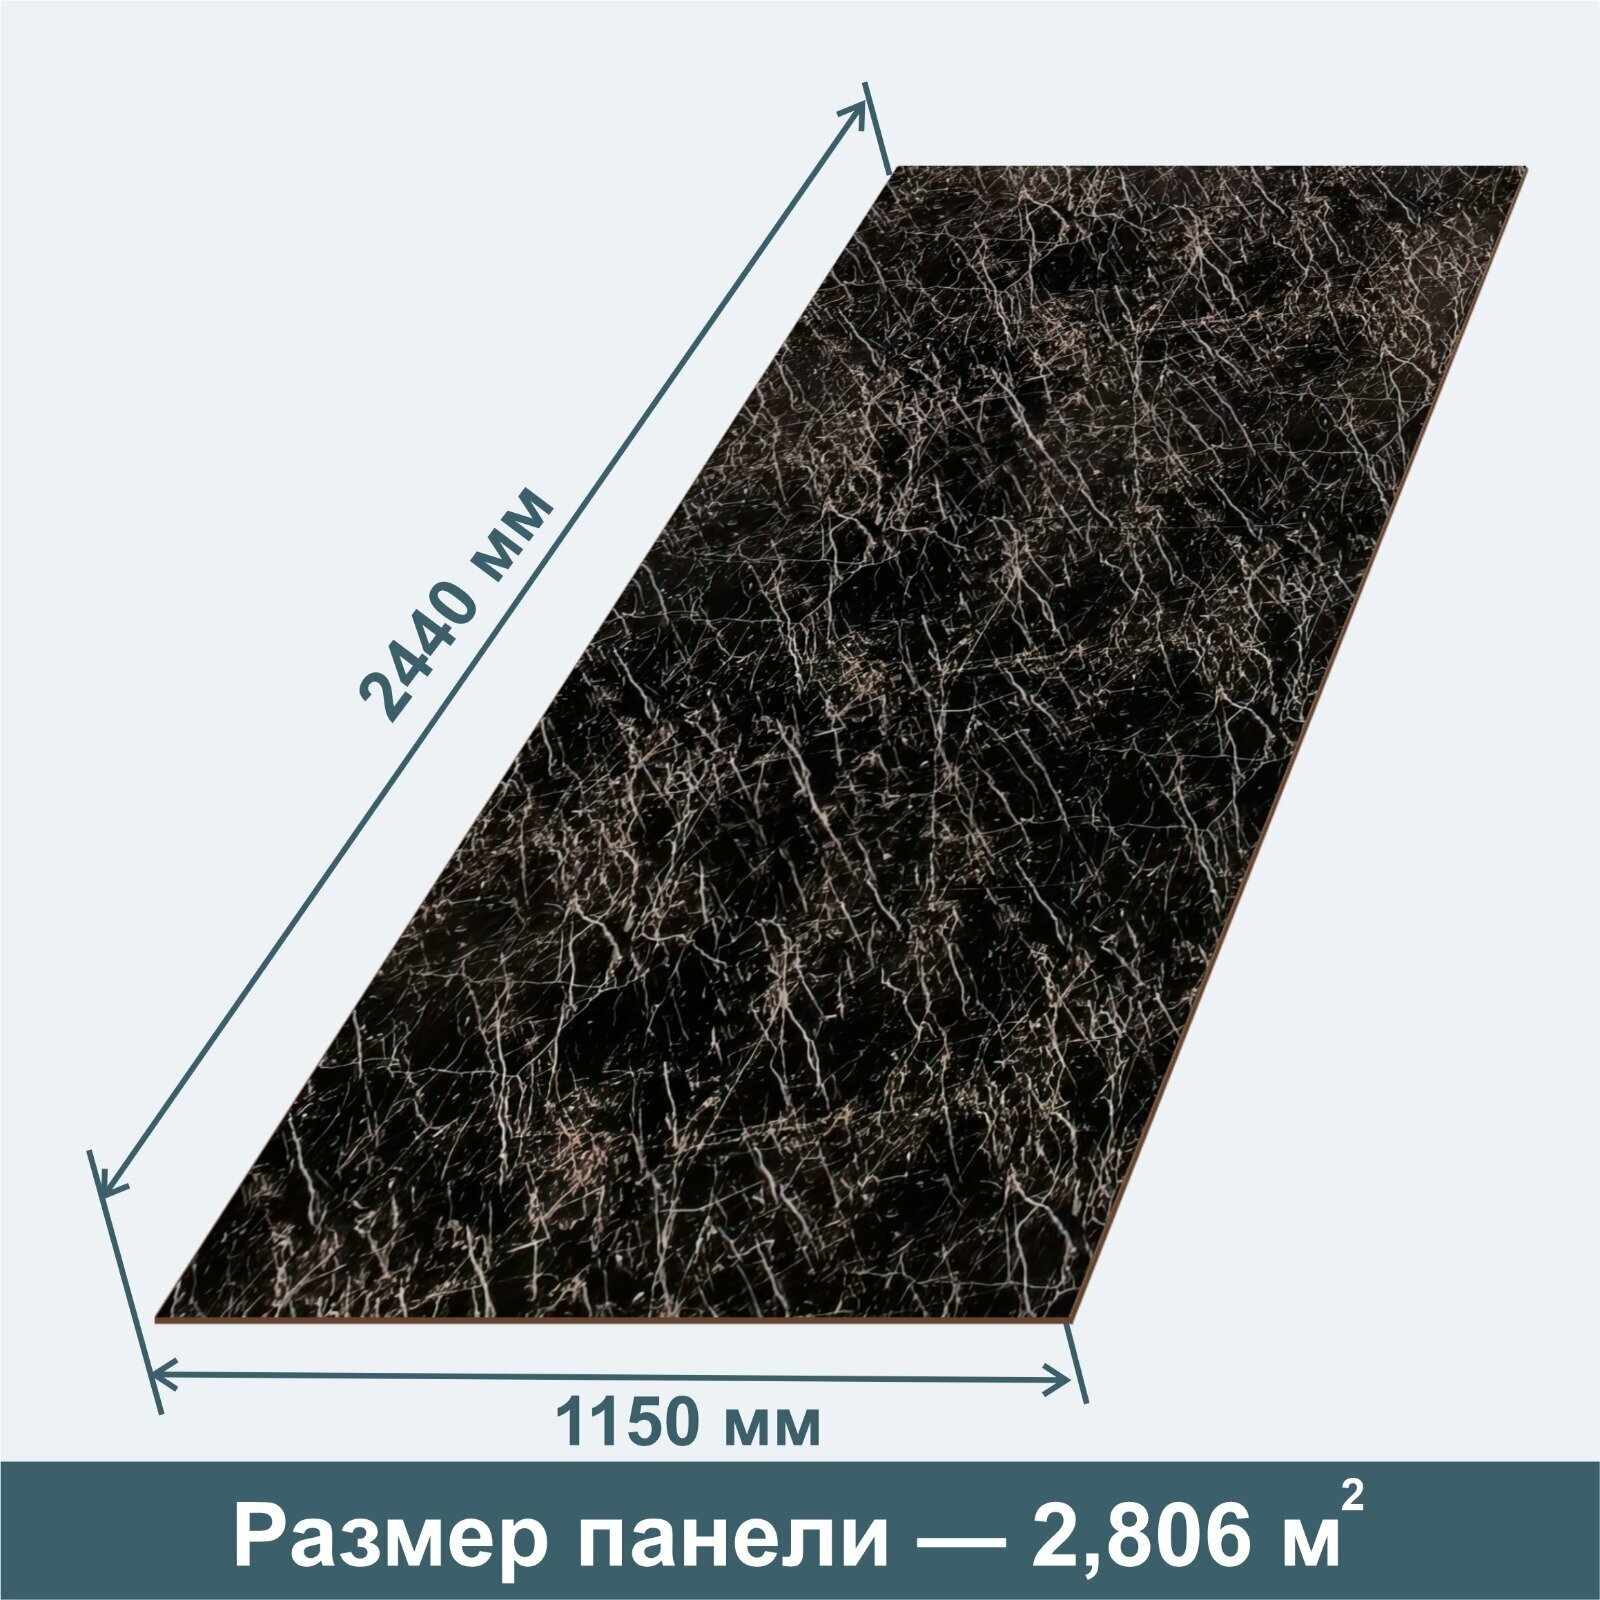 Стеновая Панель из МДФ RashDecor артдизайн (влагостойкая) Мрамор Черный 2440х1150х32 мм